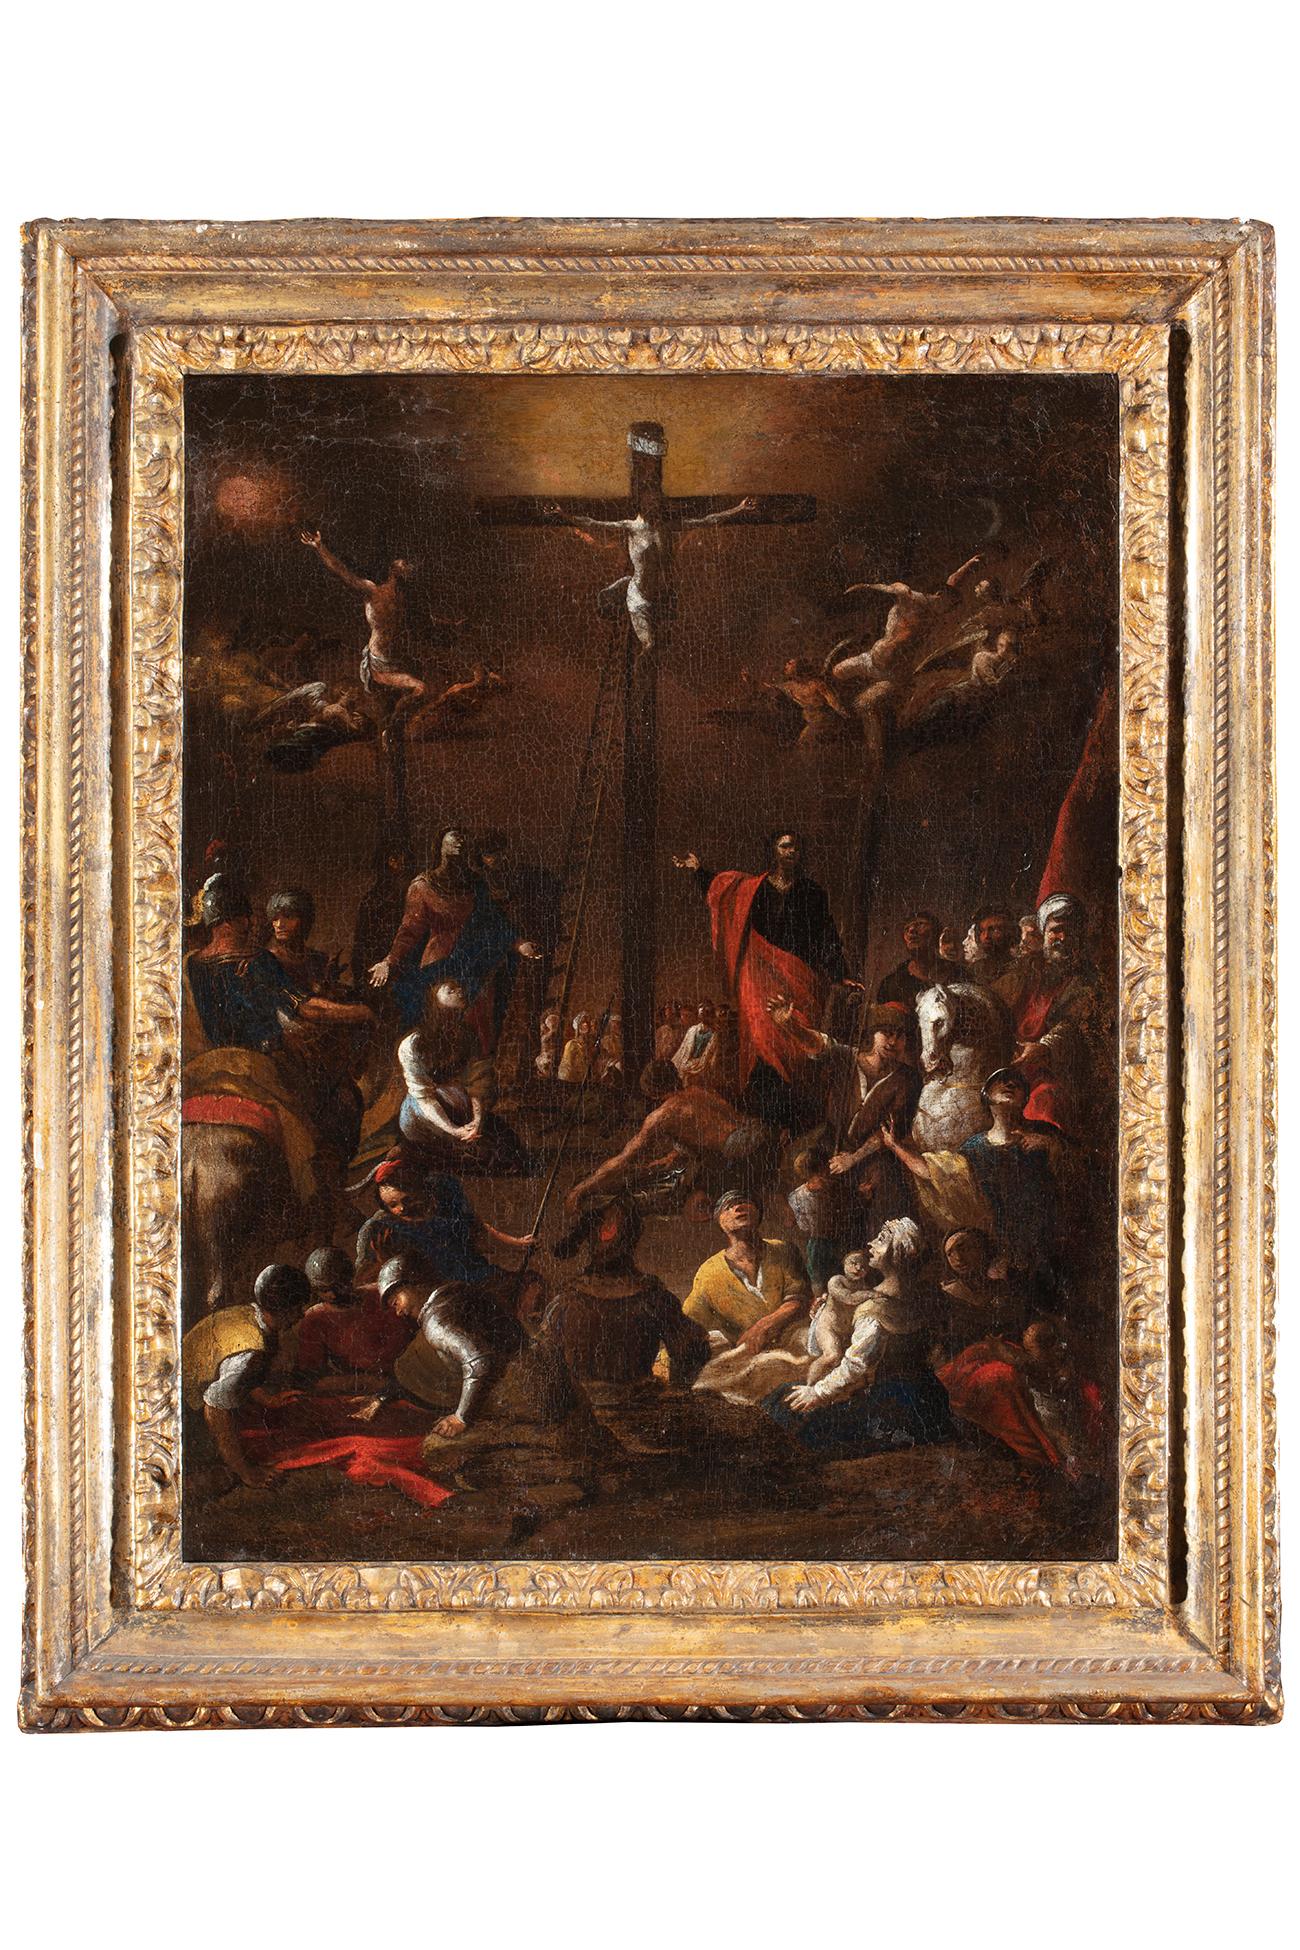 Scipione Compagno (actif à Naples au XVIIe siècle)
Crucifixion 
Huile sur toile, cm. 64 x 52,5 - avec cadre cm. 80 x 67
Cadre de cassette antique en bois sculpté et doré selon la technique Mecca  

Expertise : Nicola Spinosa 
Publications :